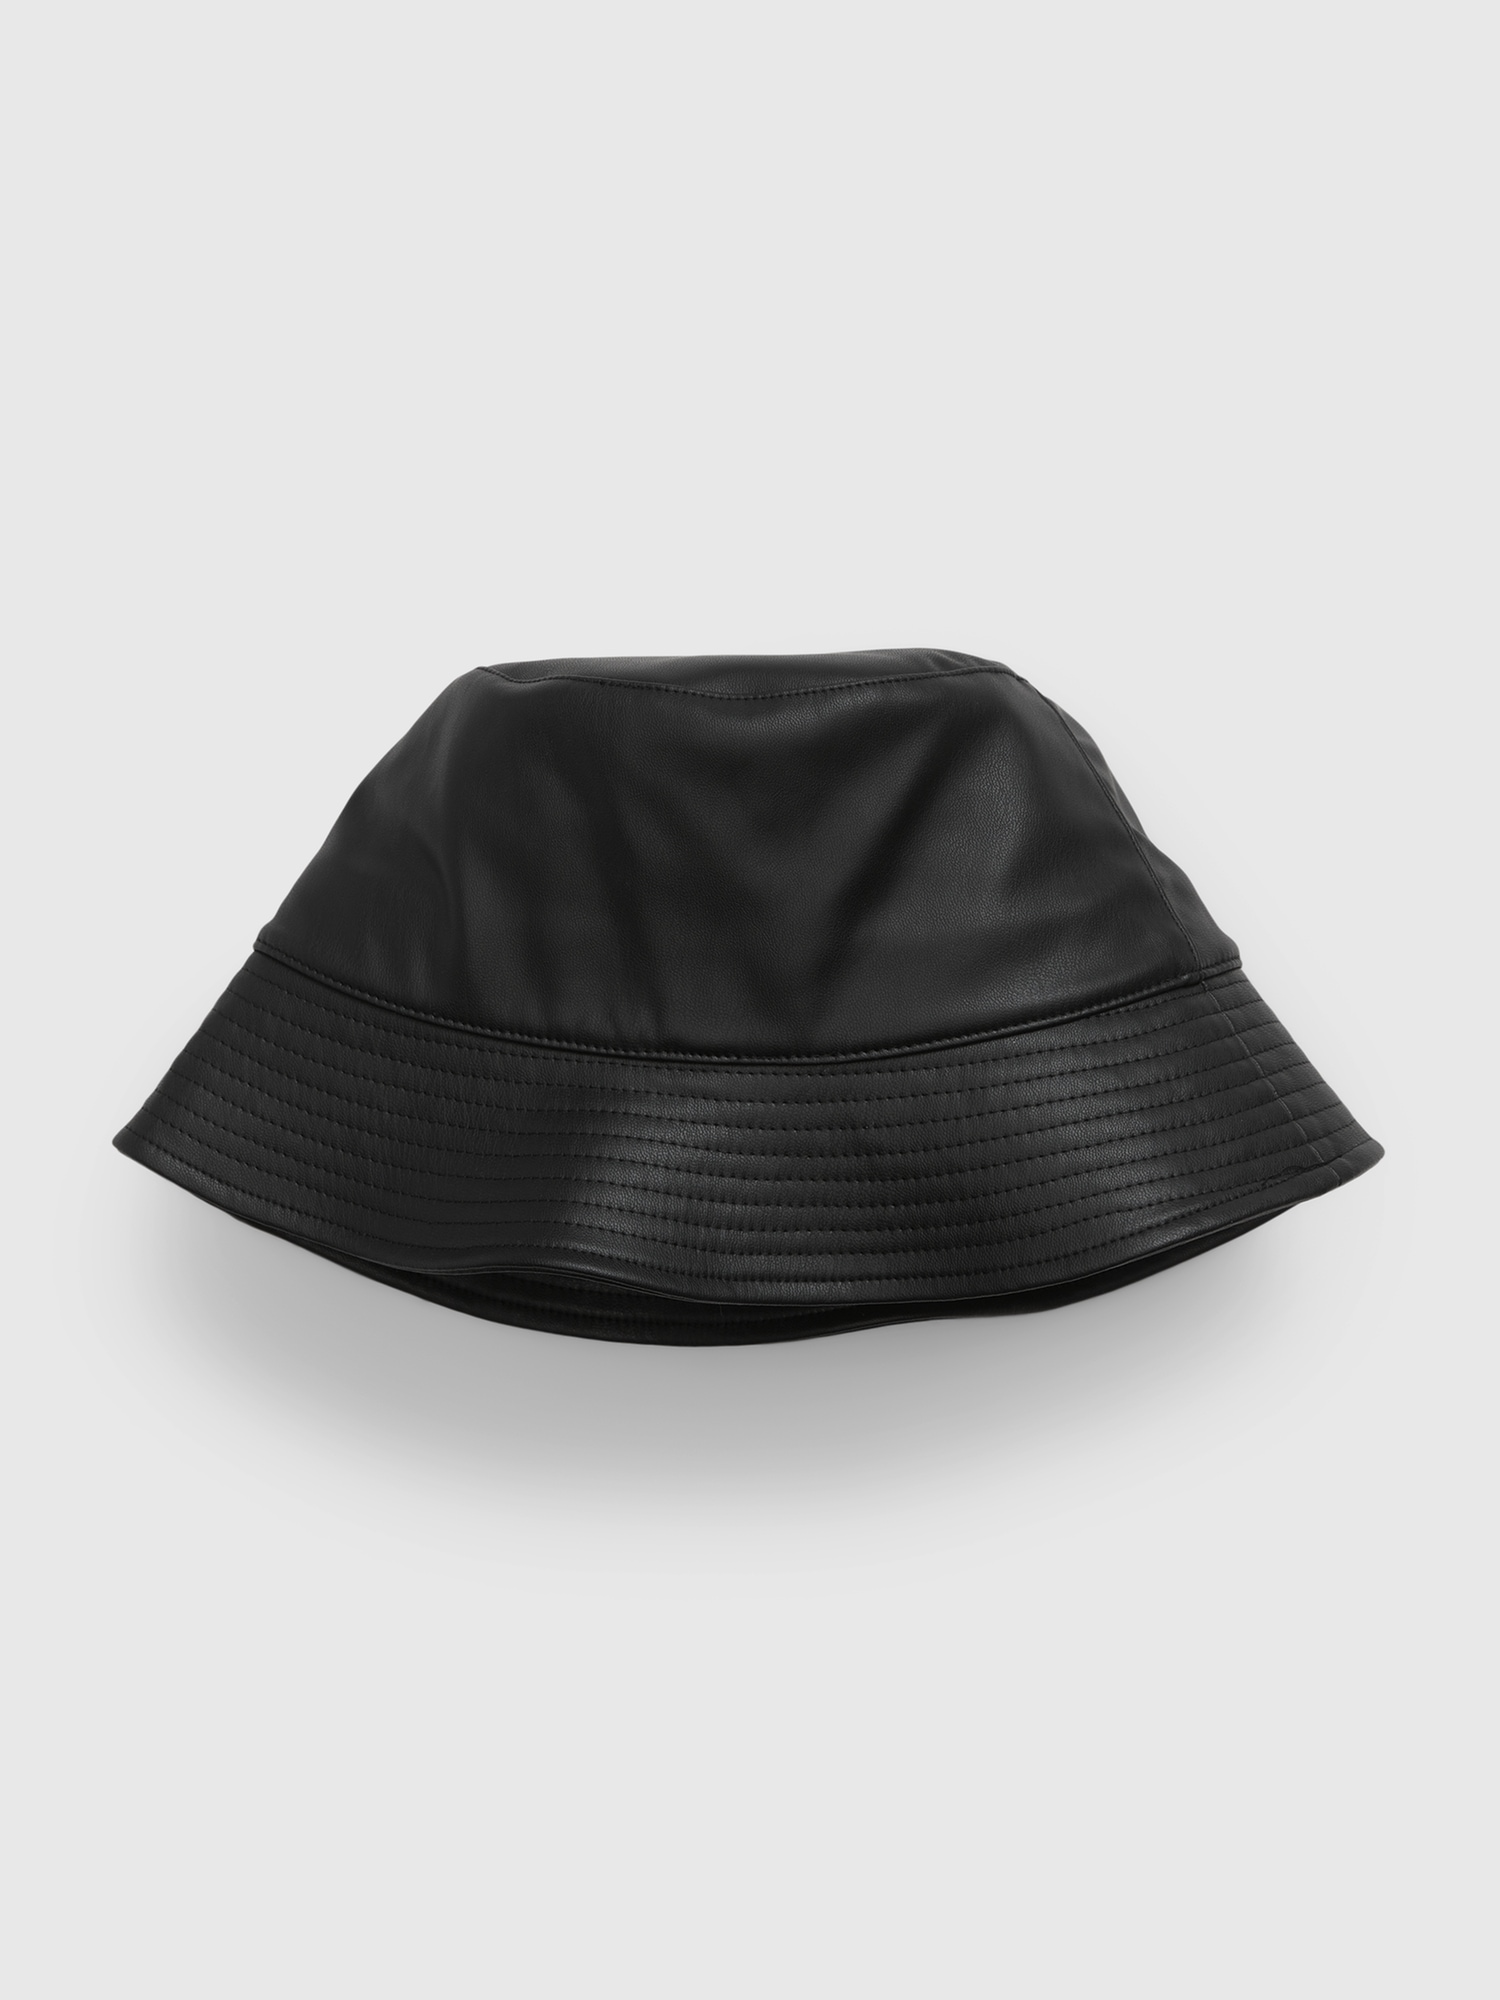 Girls' Faux-Leather Bucket Hat by Gap True Black Size L/XL